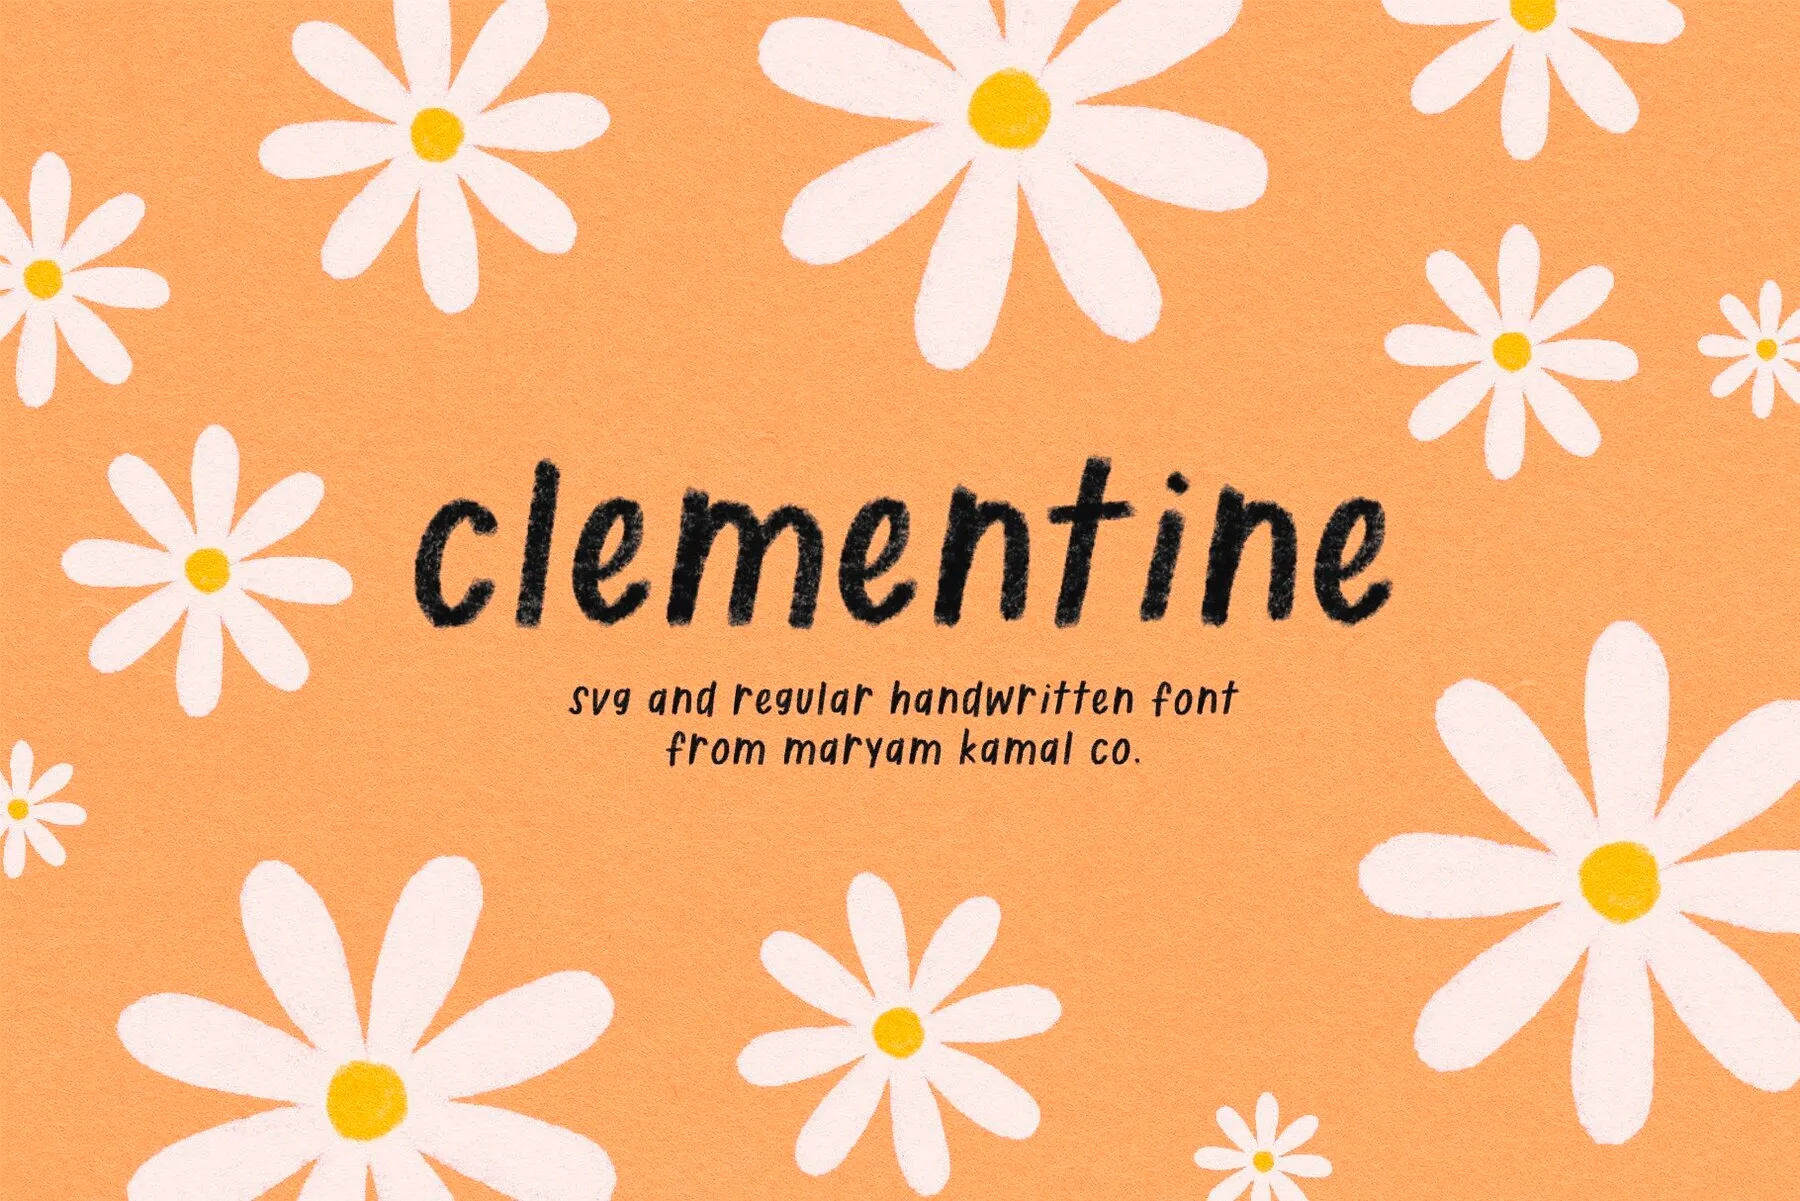 Clementine SVG